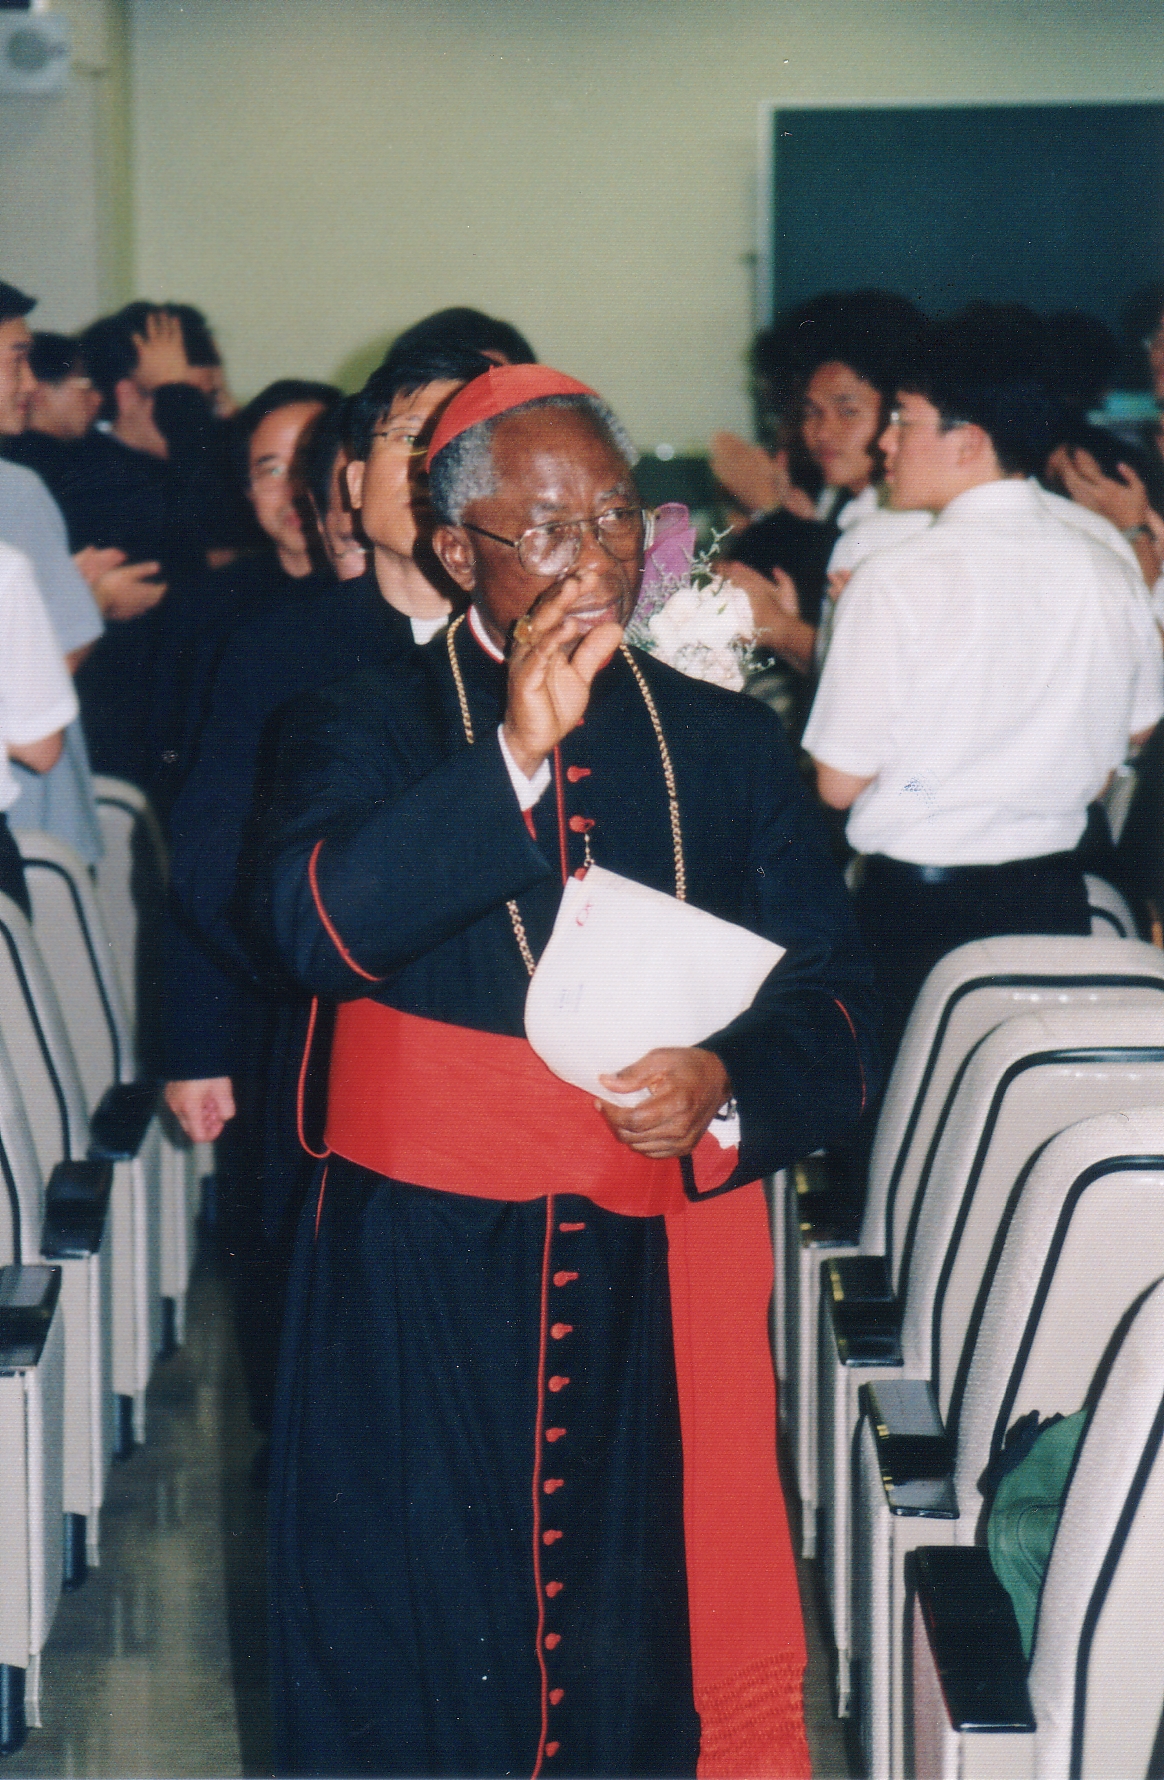 가톨릭대학교 (1995통합 - ) (3)의 관련된 이미지 입니다.